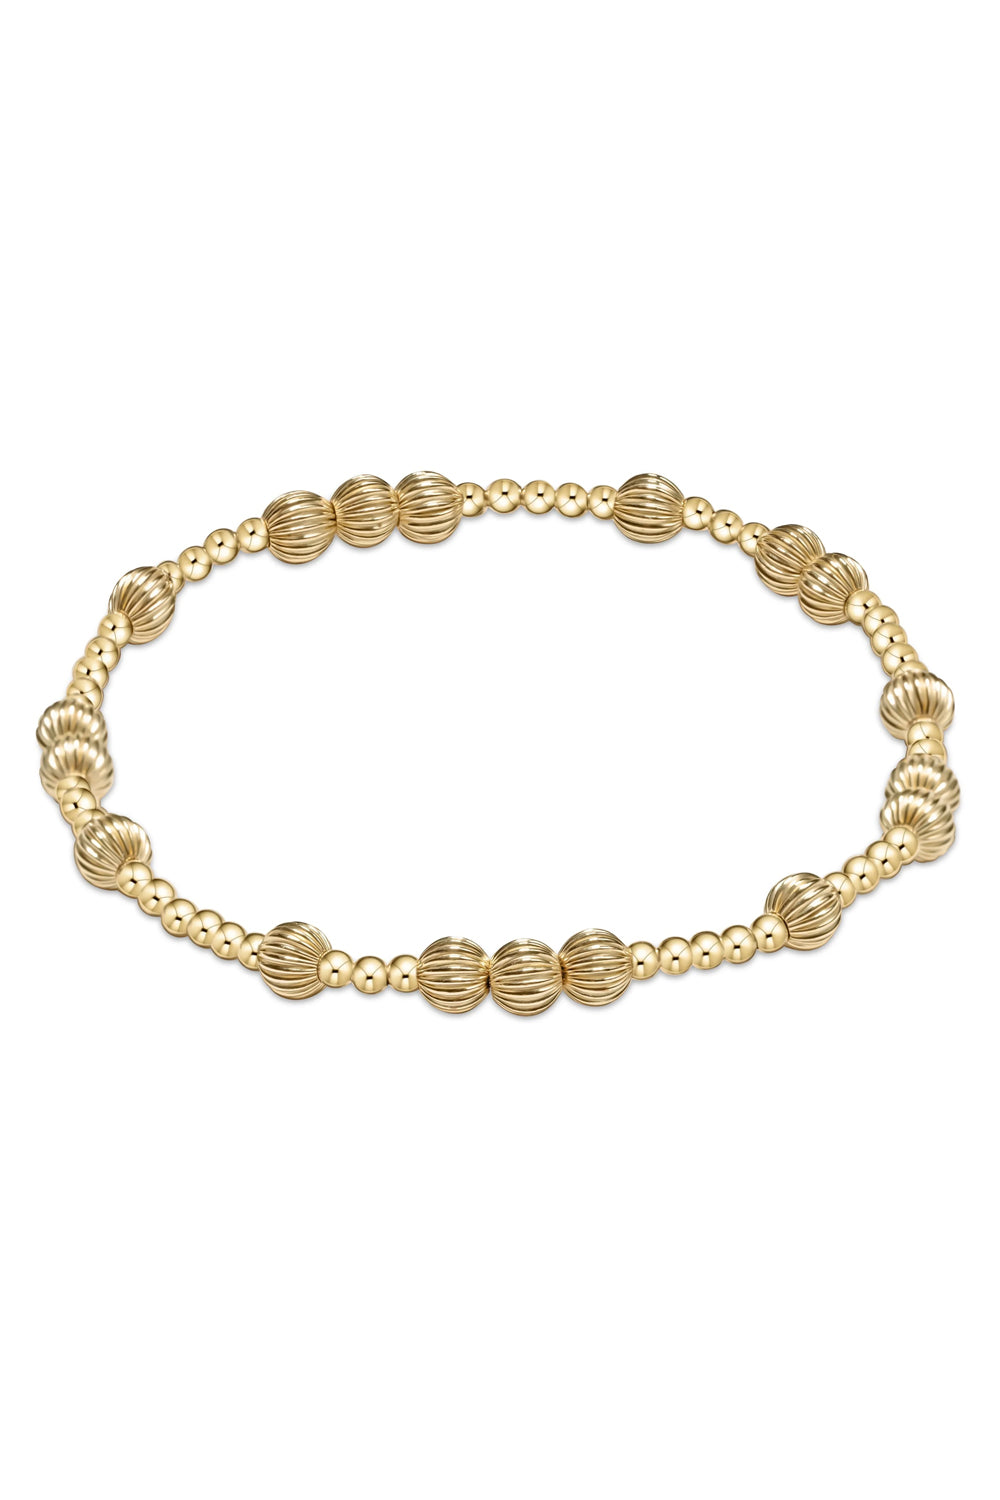 enewton: Hope Unwritten Dignity 5mm Bead Bracelet - Gold | Makk Fashions